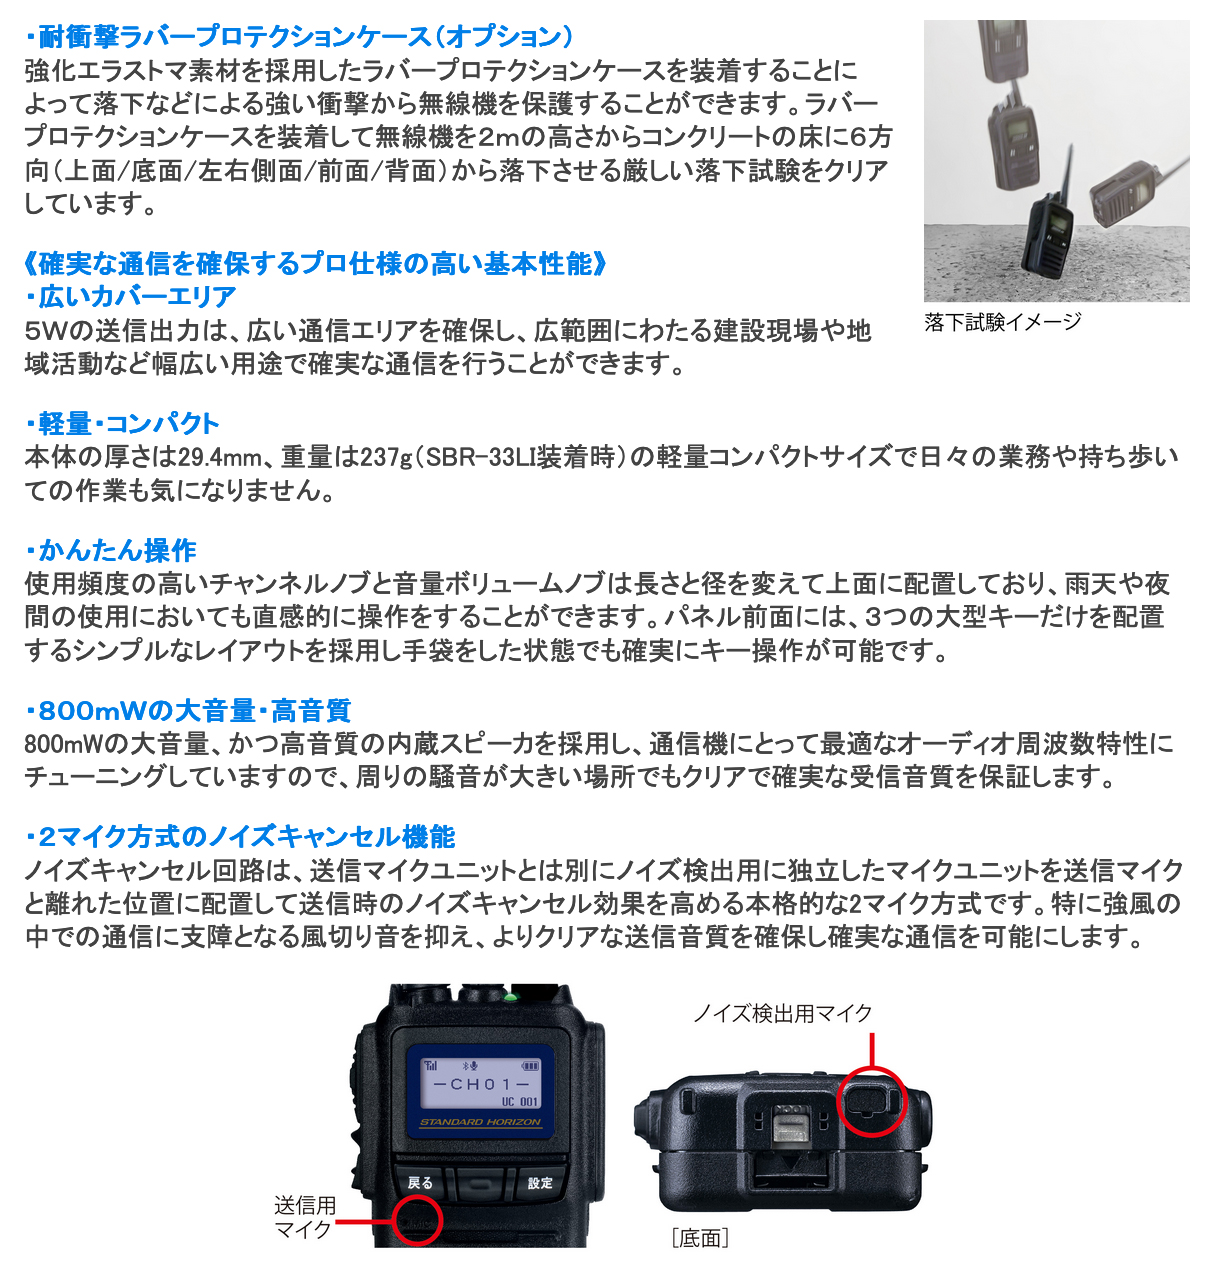 株式会社コムネットジャパン / SR740 Bluetooth対応 スタンダード